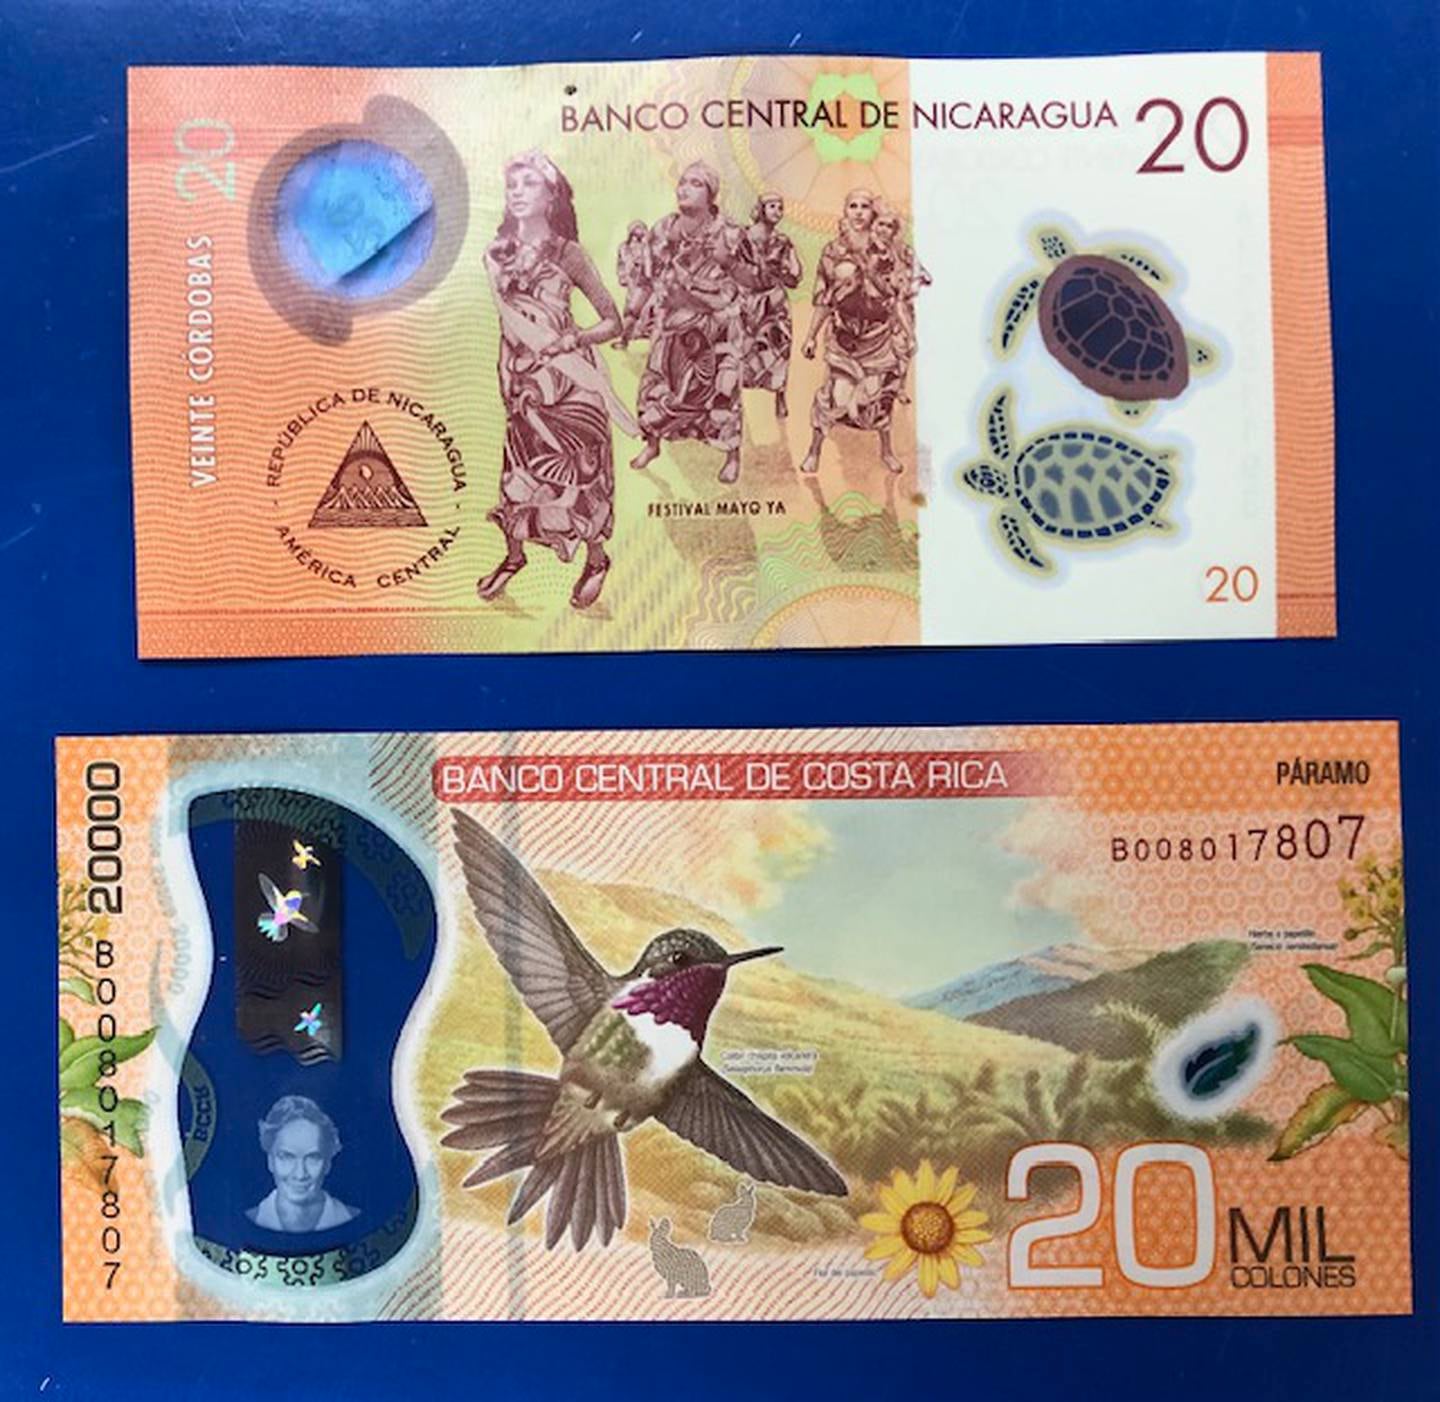 El billete de 20 córdobas de Nicaragua es gemelo del billete de 20 mil colones tico, lo que pasa es que el nicaragüense equivale a 500 colones ticos y están metiéndoselo a comercios y abuelitos